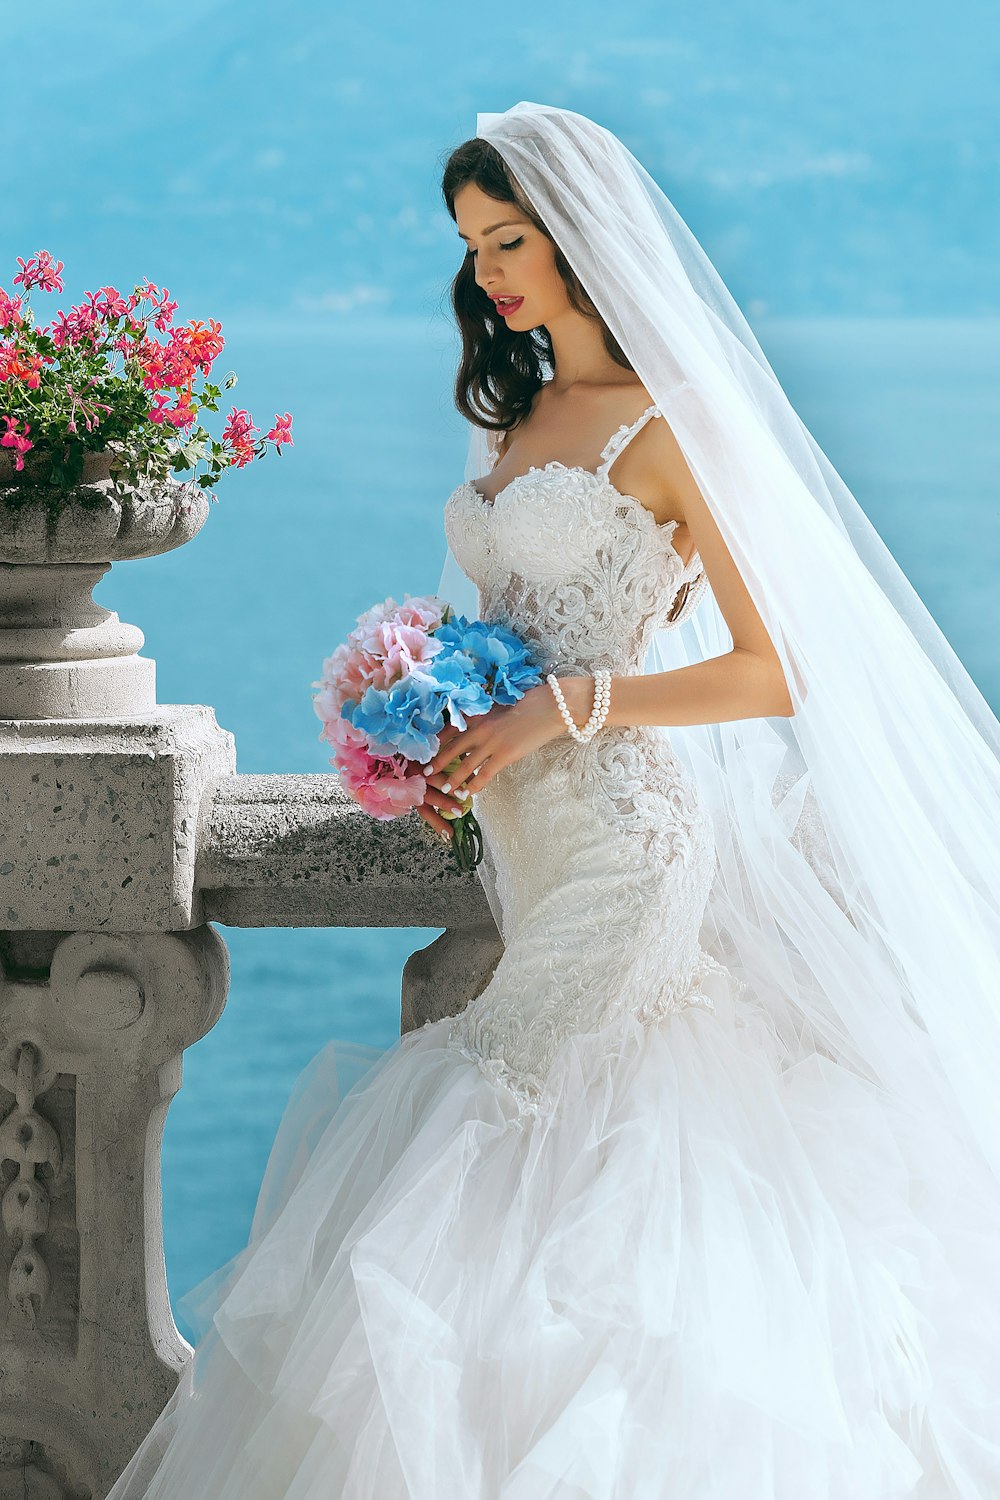 femme en robe de mariée tout en tenant une fleur pendant la journée